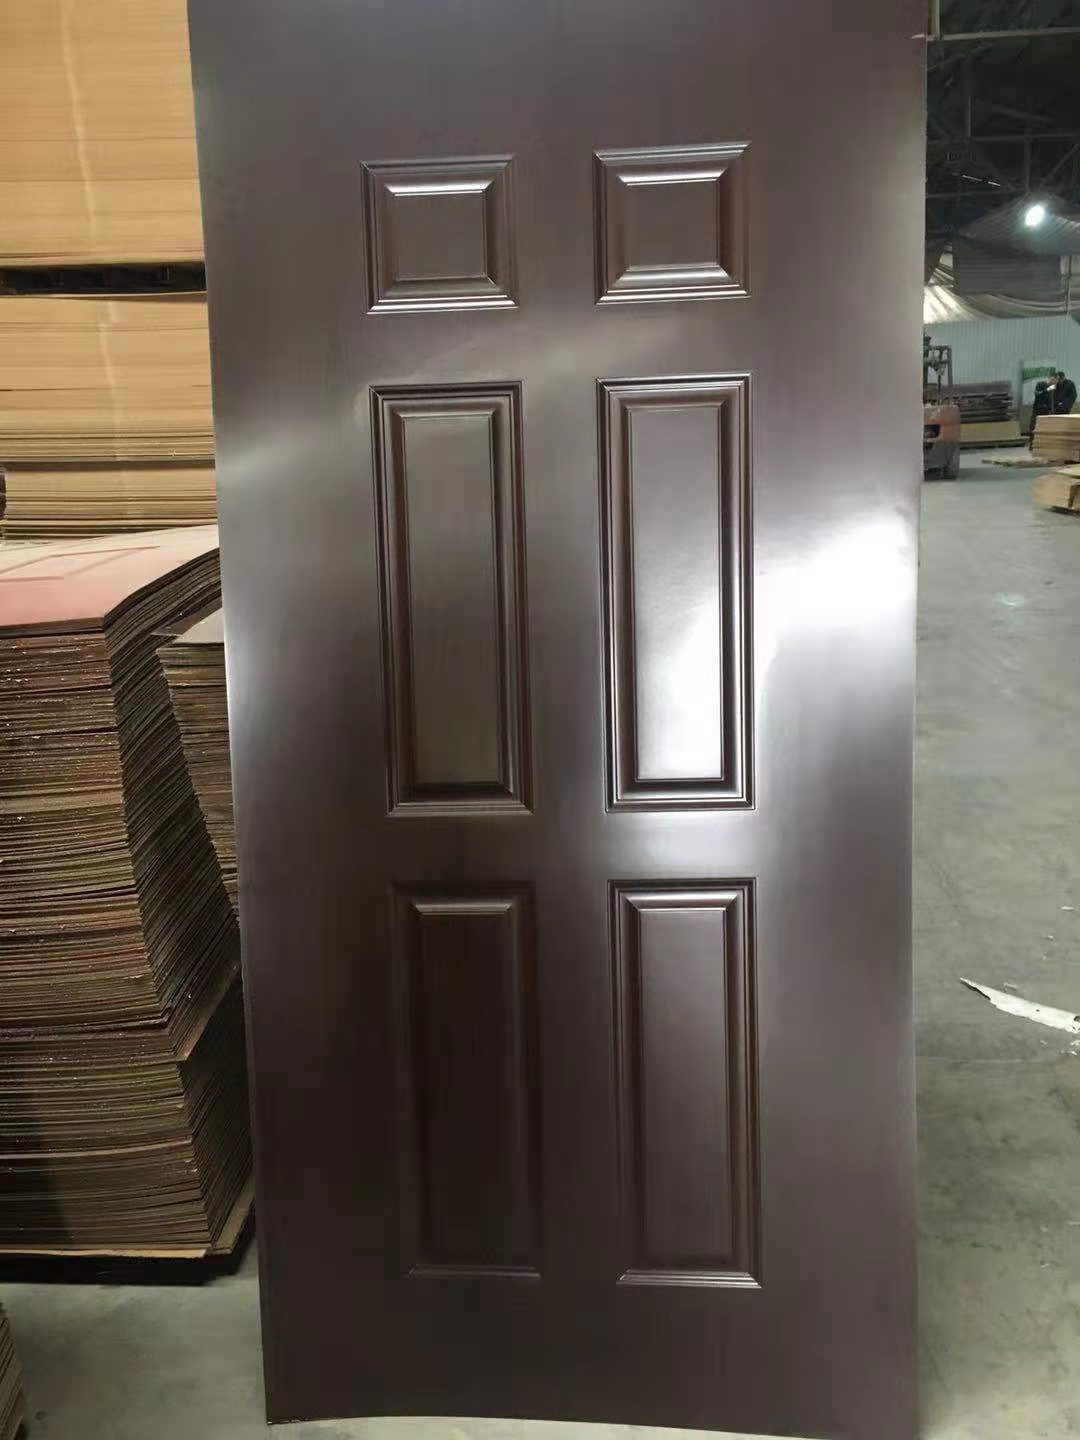 Classic Mahogany Door Panel Melamine Door Skin 07 Red 2150*920*3mm